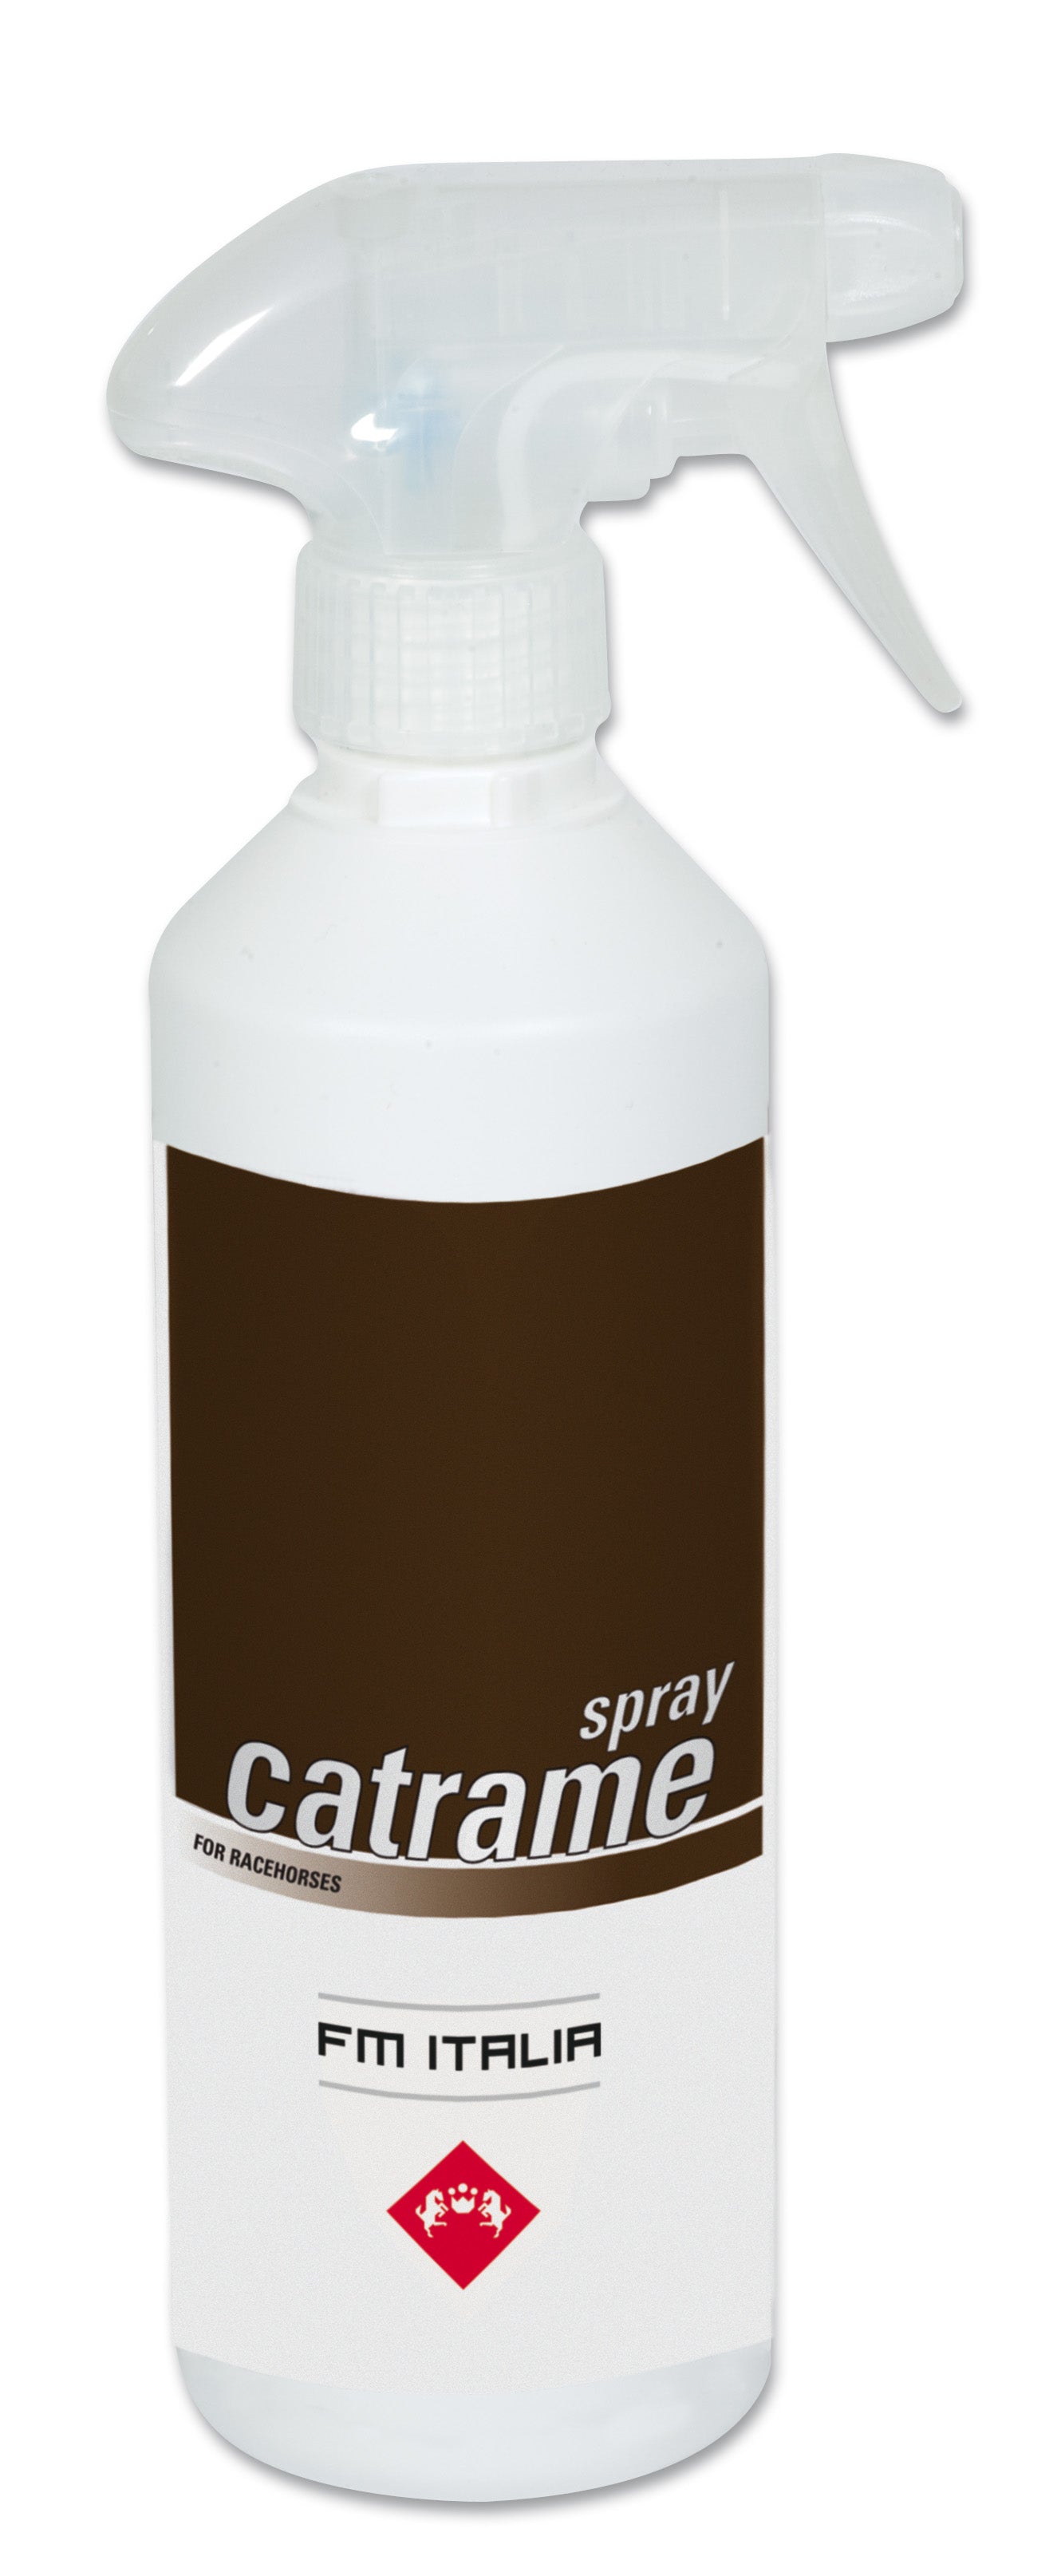 Catrame Spray | Pijnboomteer Waterdichting voor Paardenhoeven